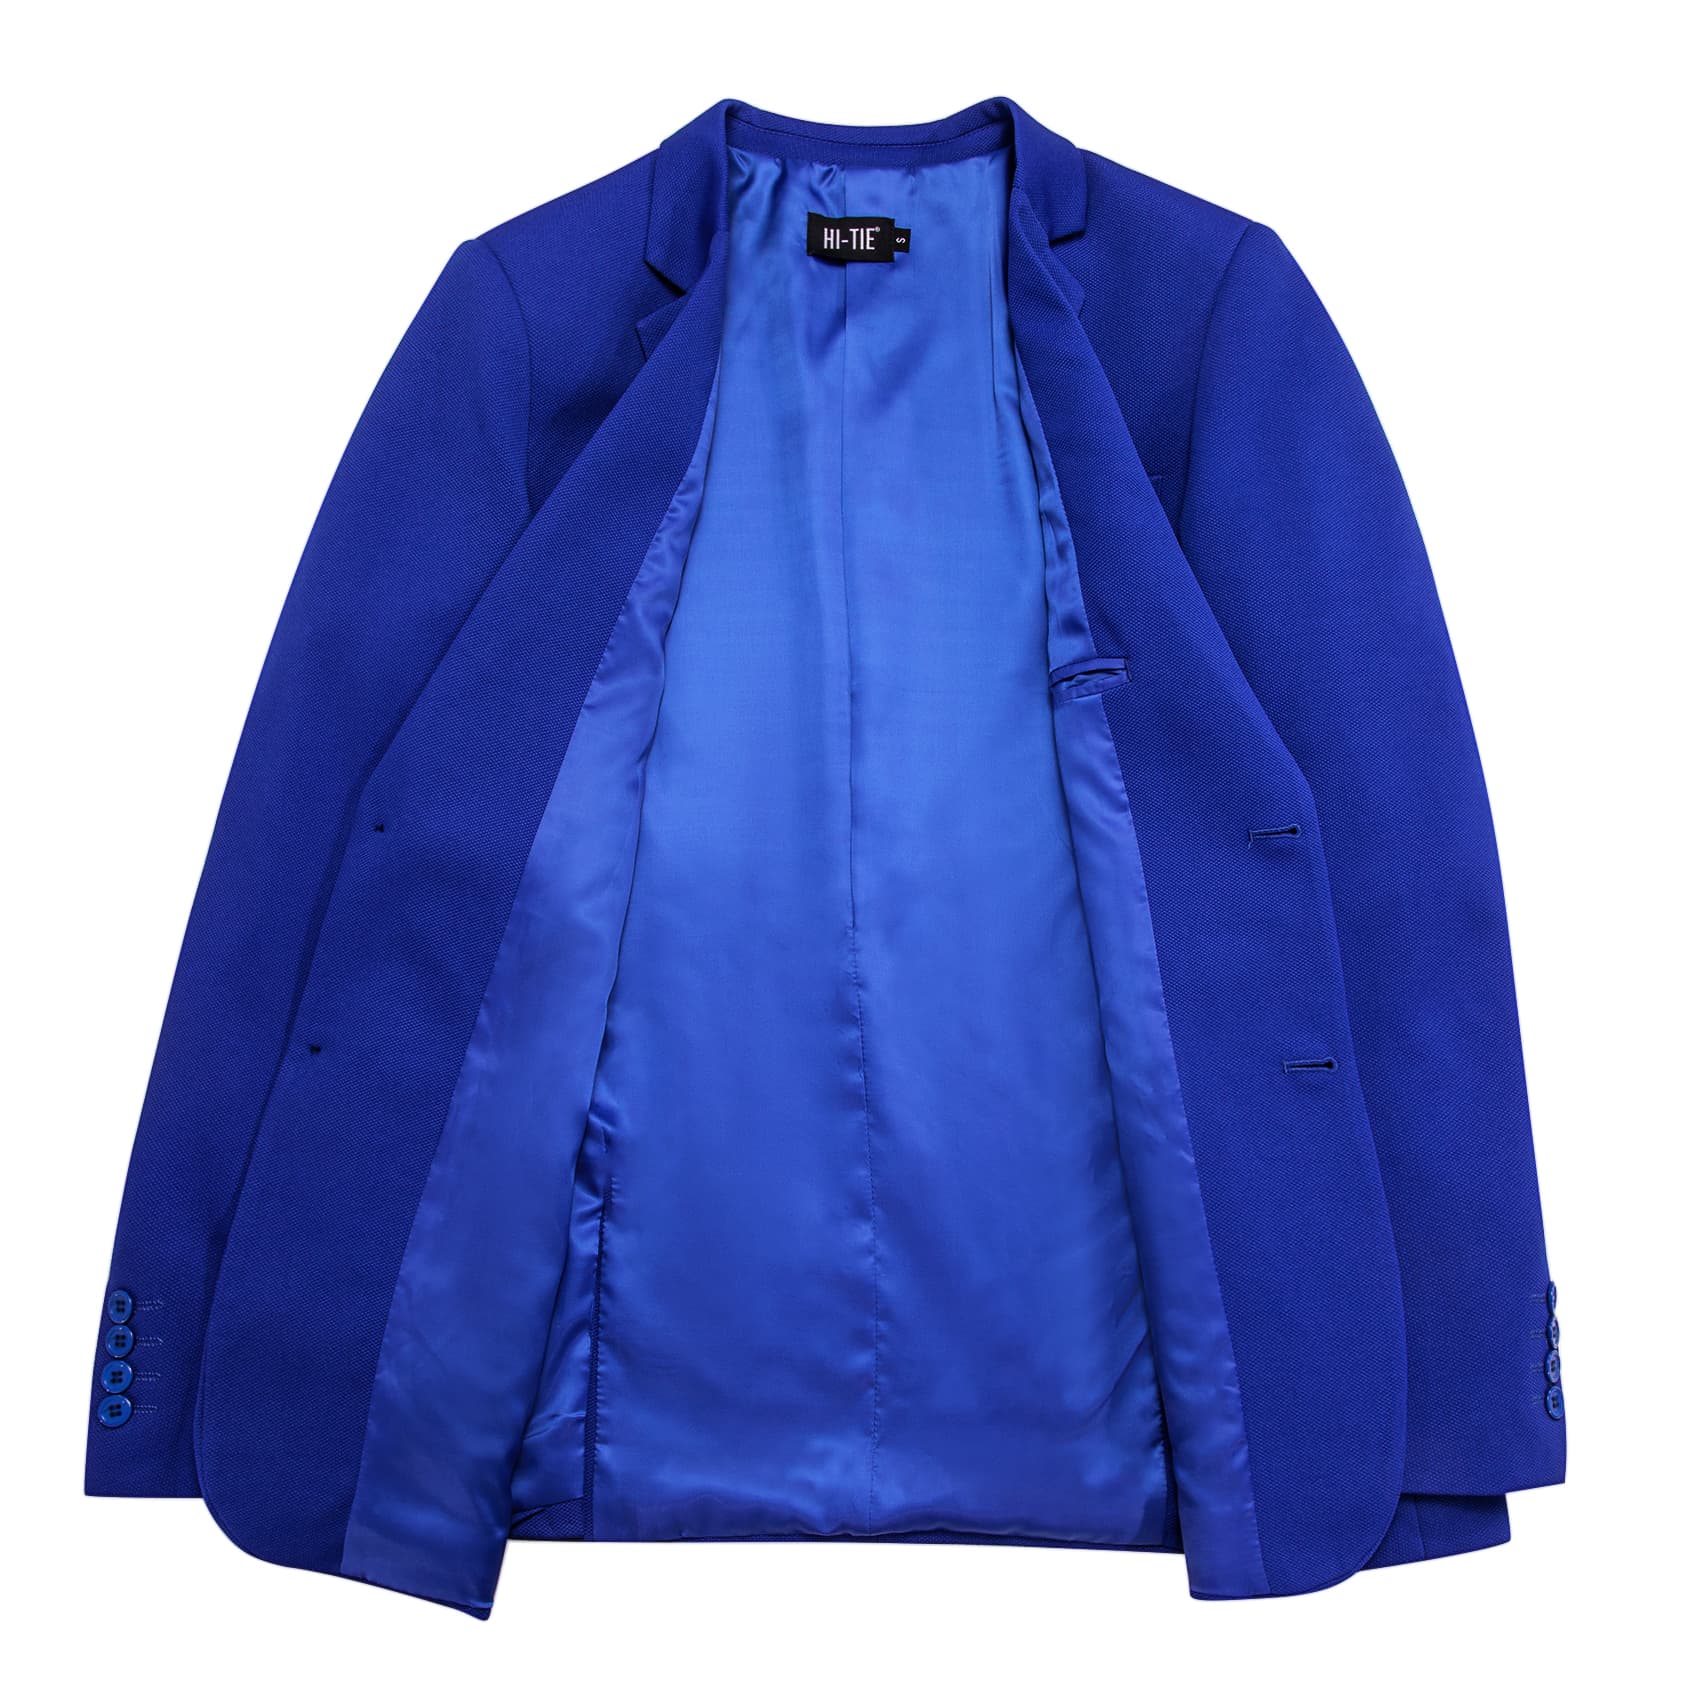 Hi-Tie Business Daily Blazer Blue Men's Suit Jacket Slim Fit Coat